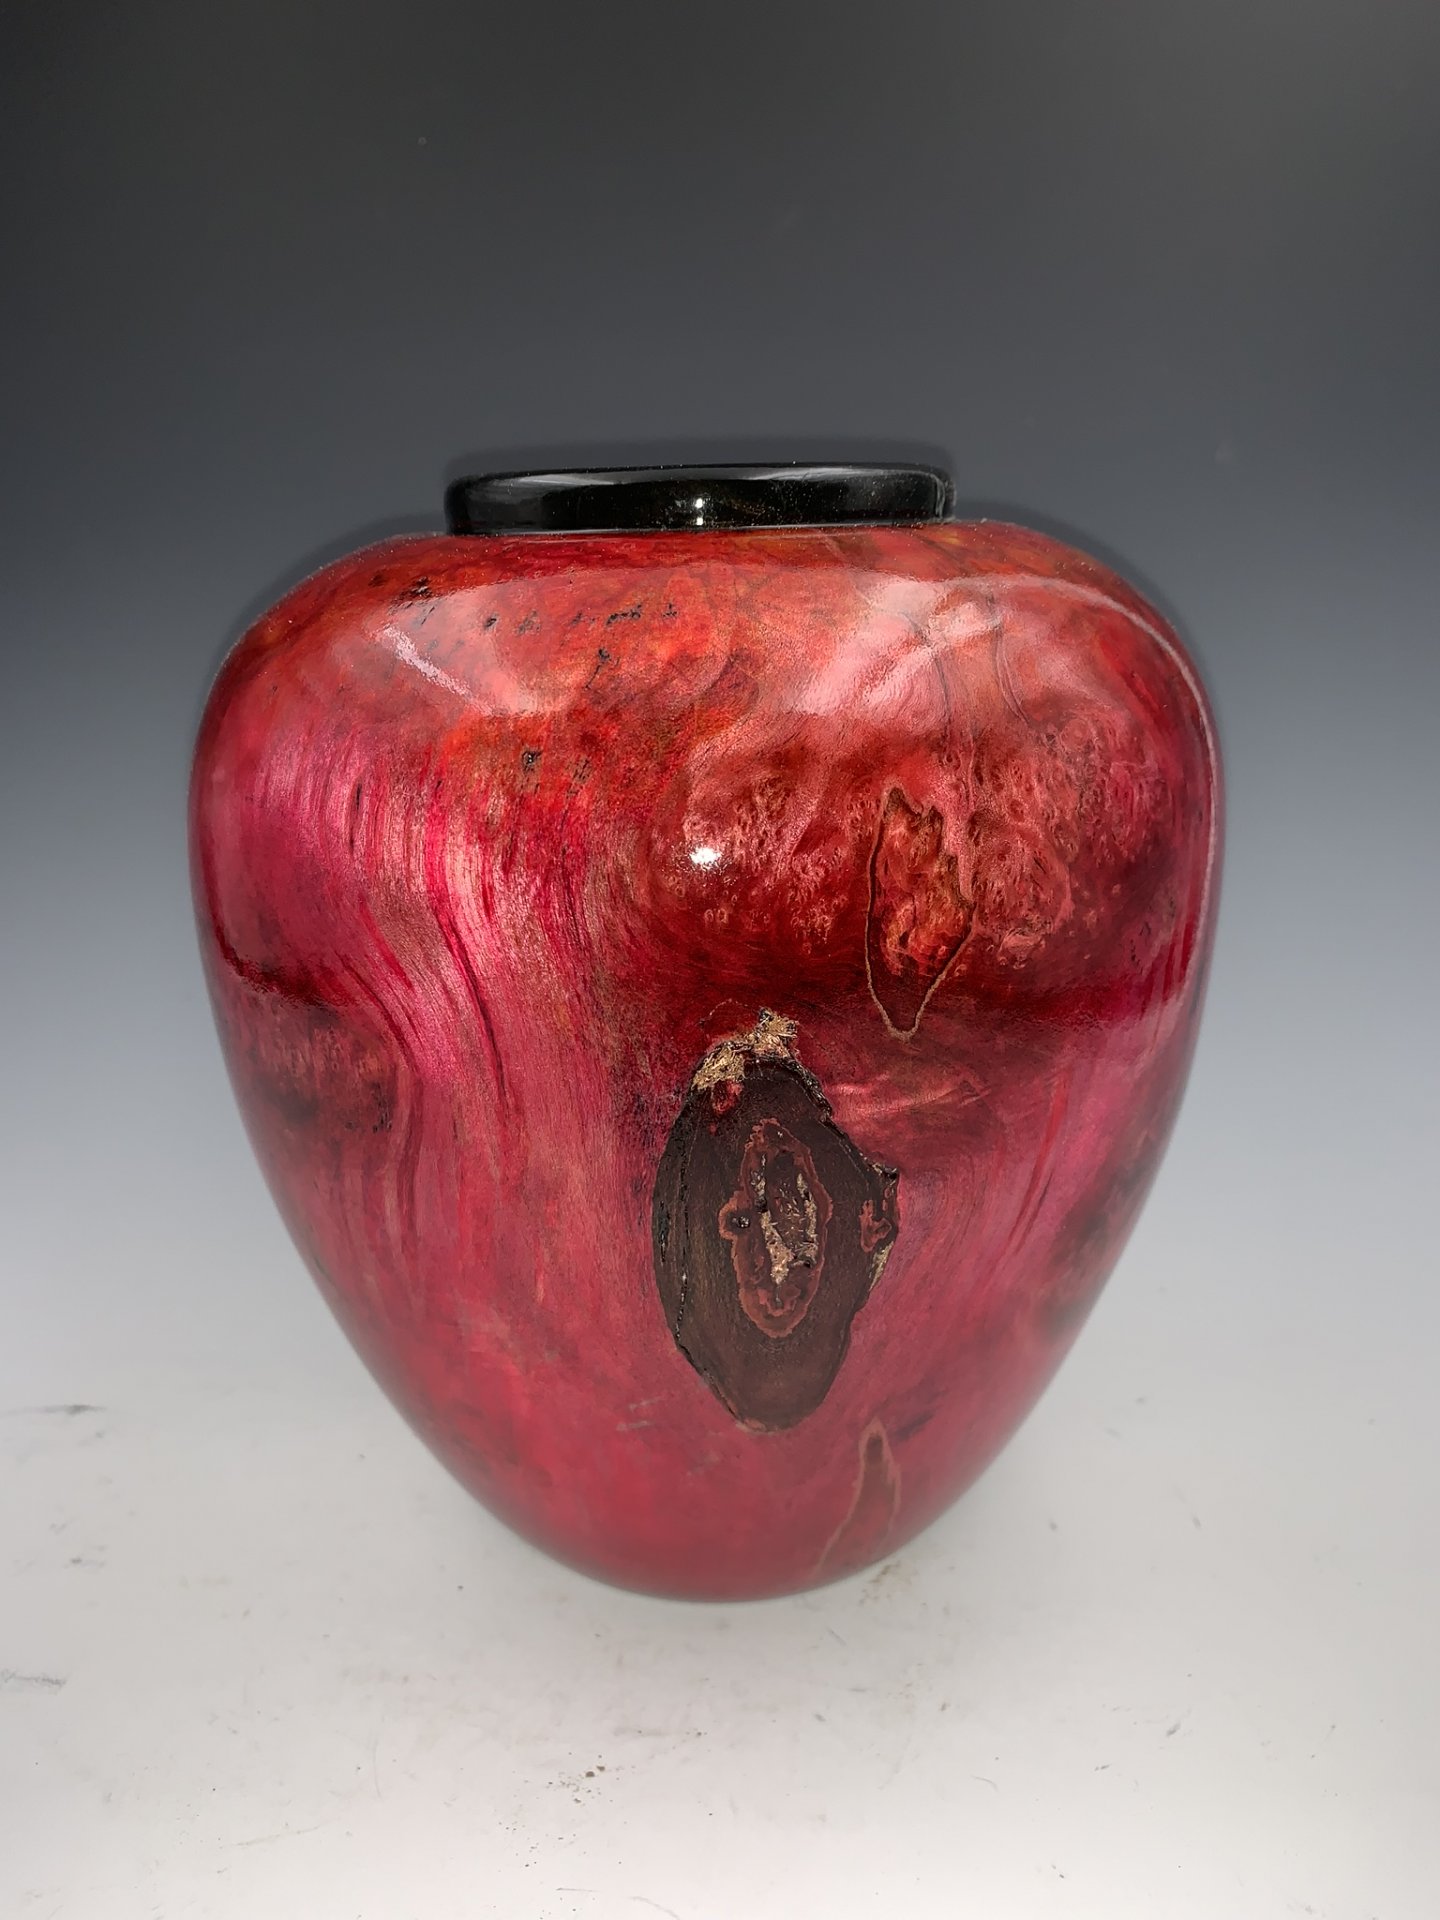 Maple Burl Vase